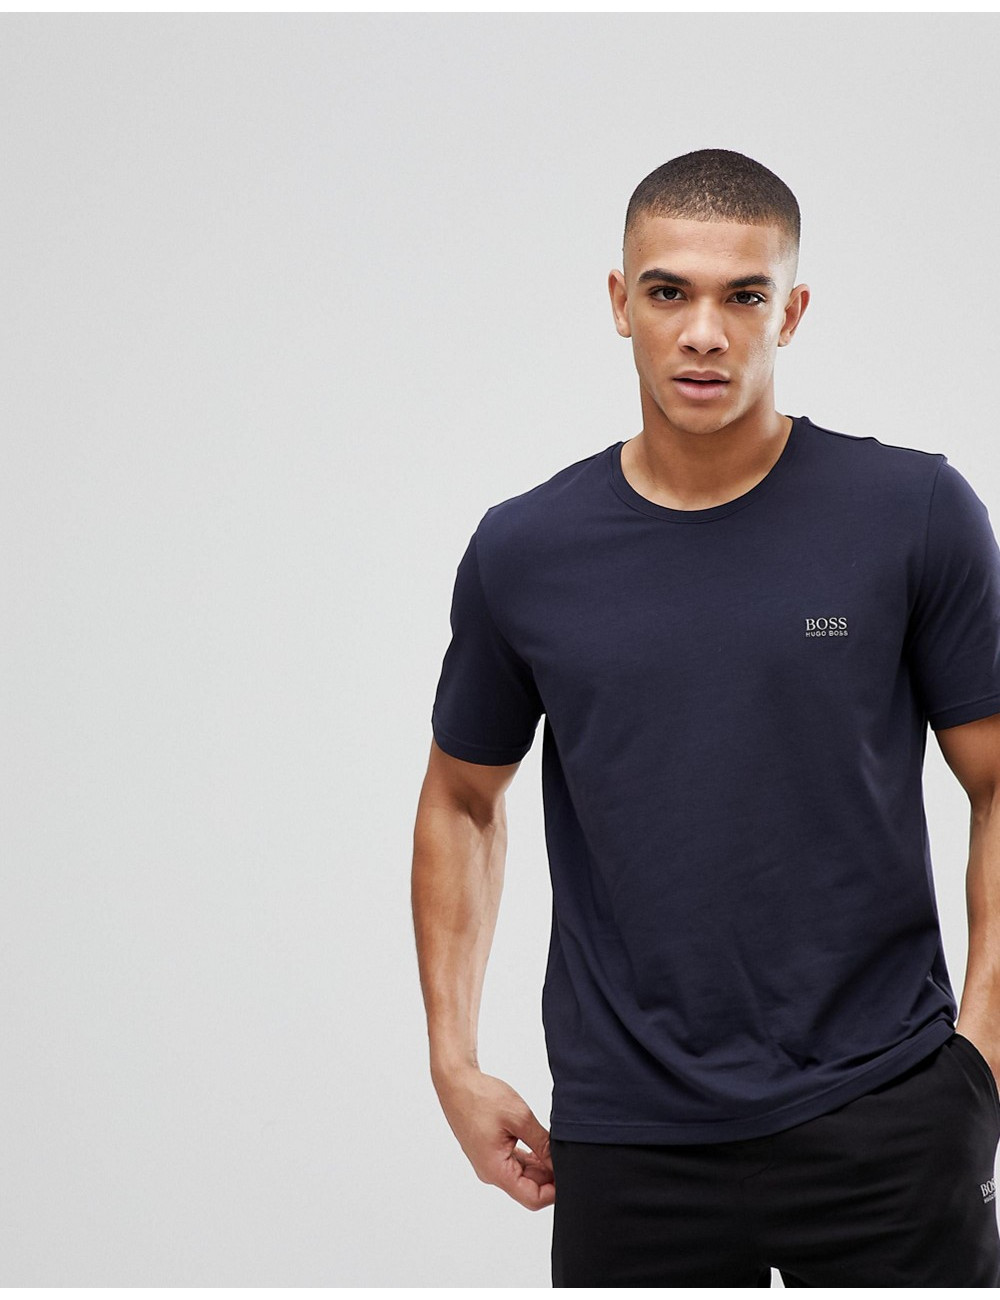 BOSS Bodywear t-shirt in navy